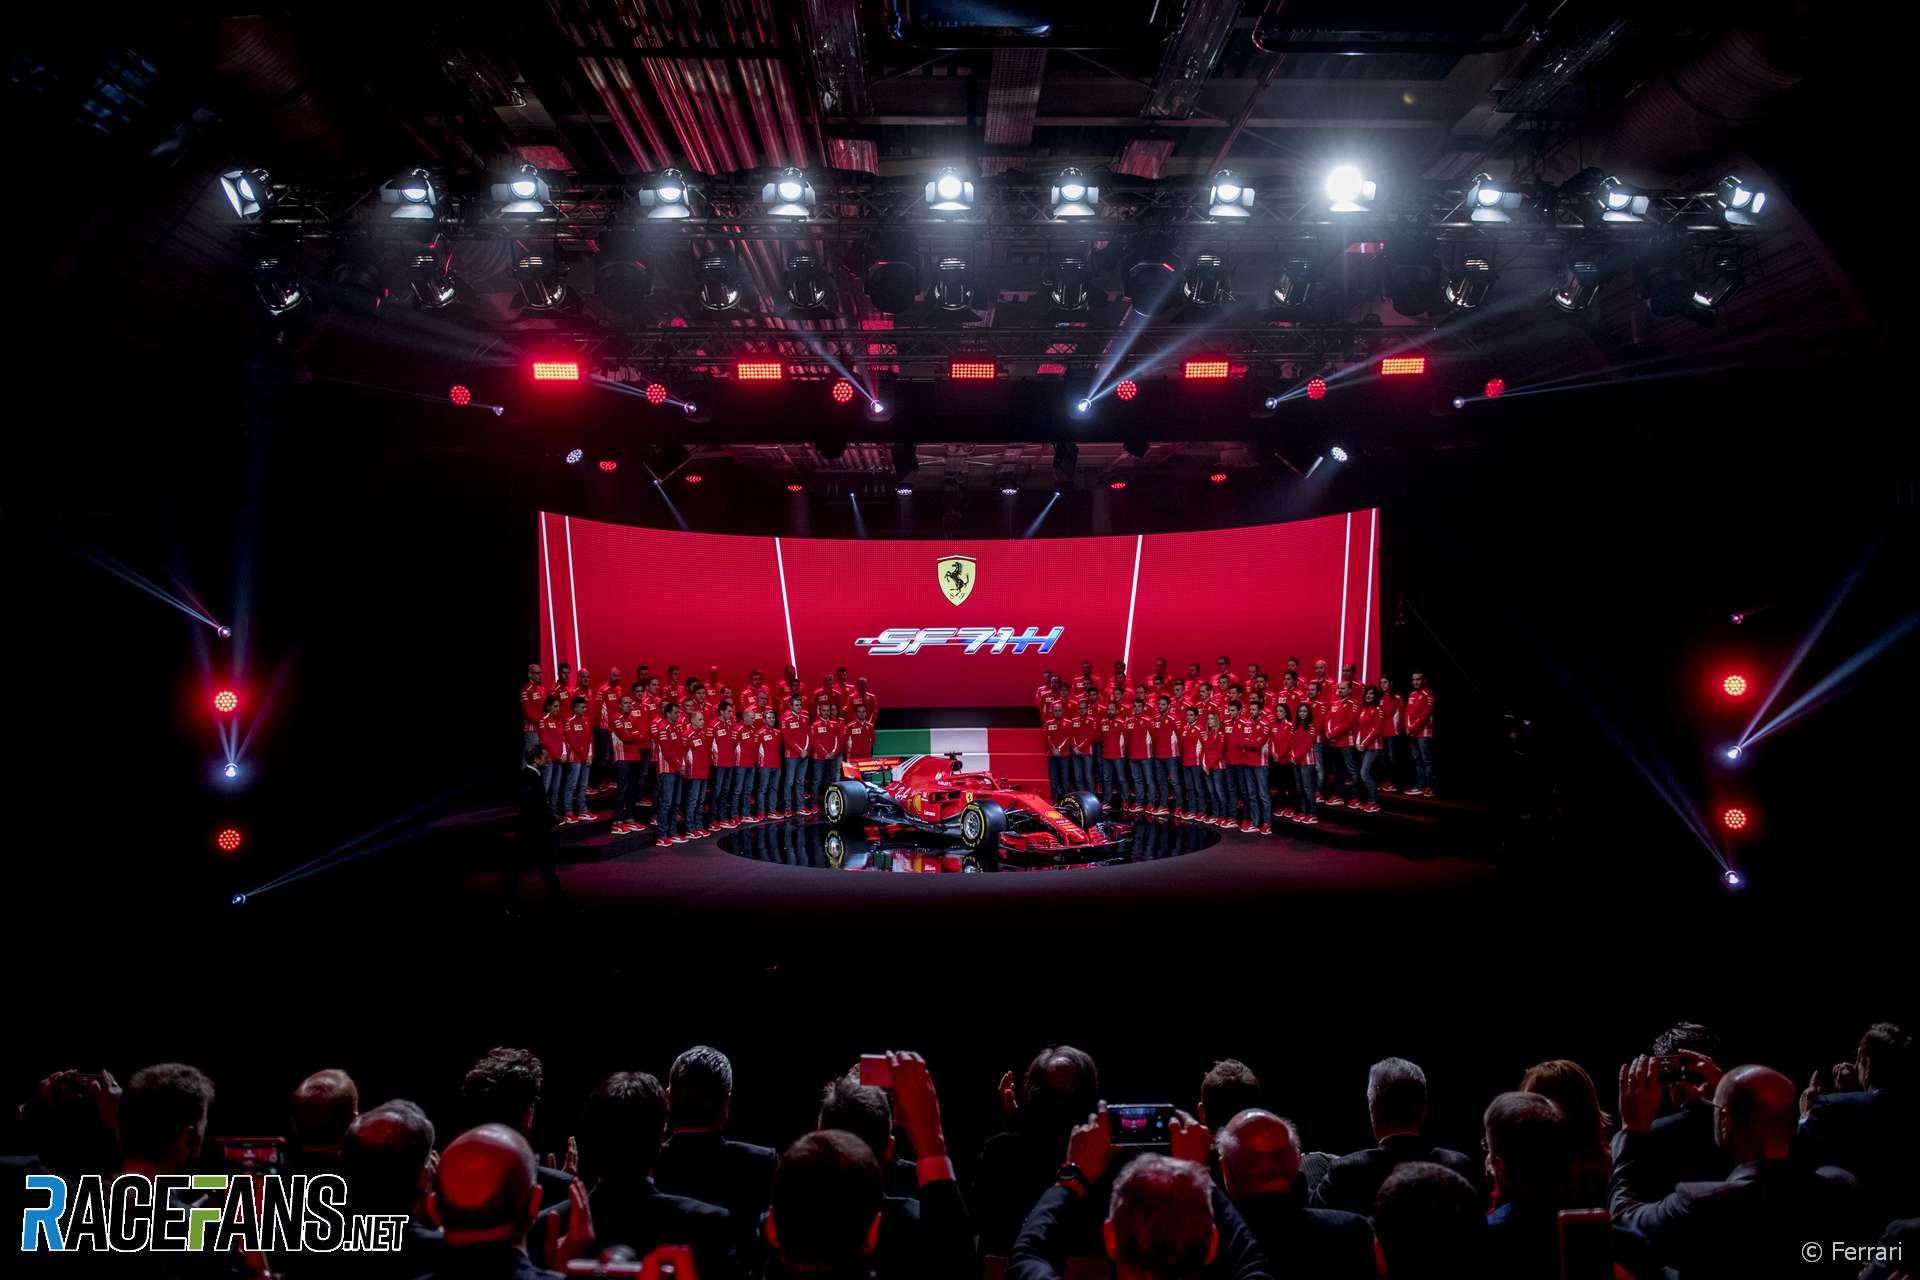 Ferrari SF17h launch, 2018